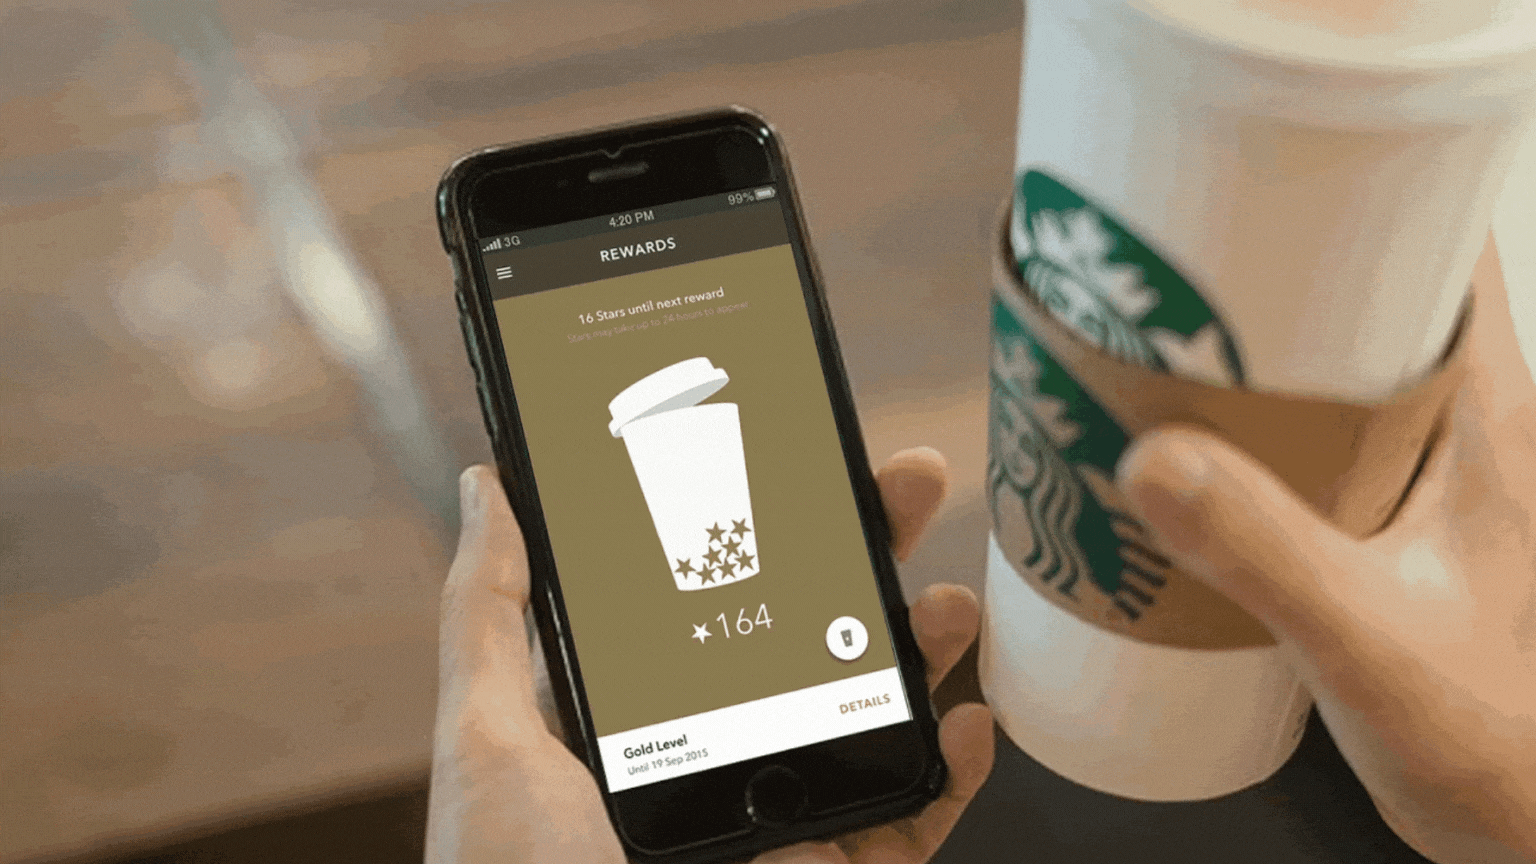 Nesta imagem podemos ver uma pessoa segurando uma bebida do Starbucks enquanto mexe no site da mesma marca. O site do Starbucks faz uso de inteligência artificial para entregar resultados mais personalizados a seus clientes.